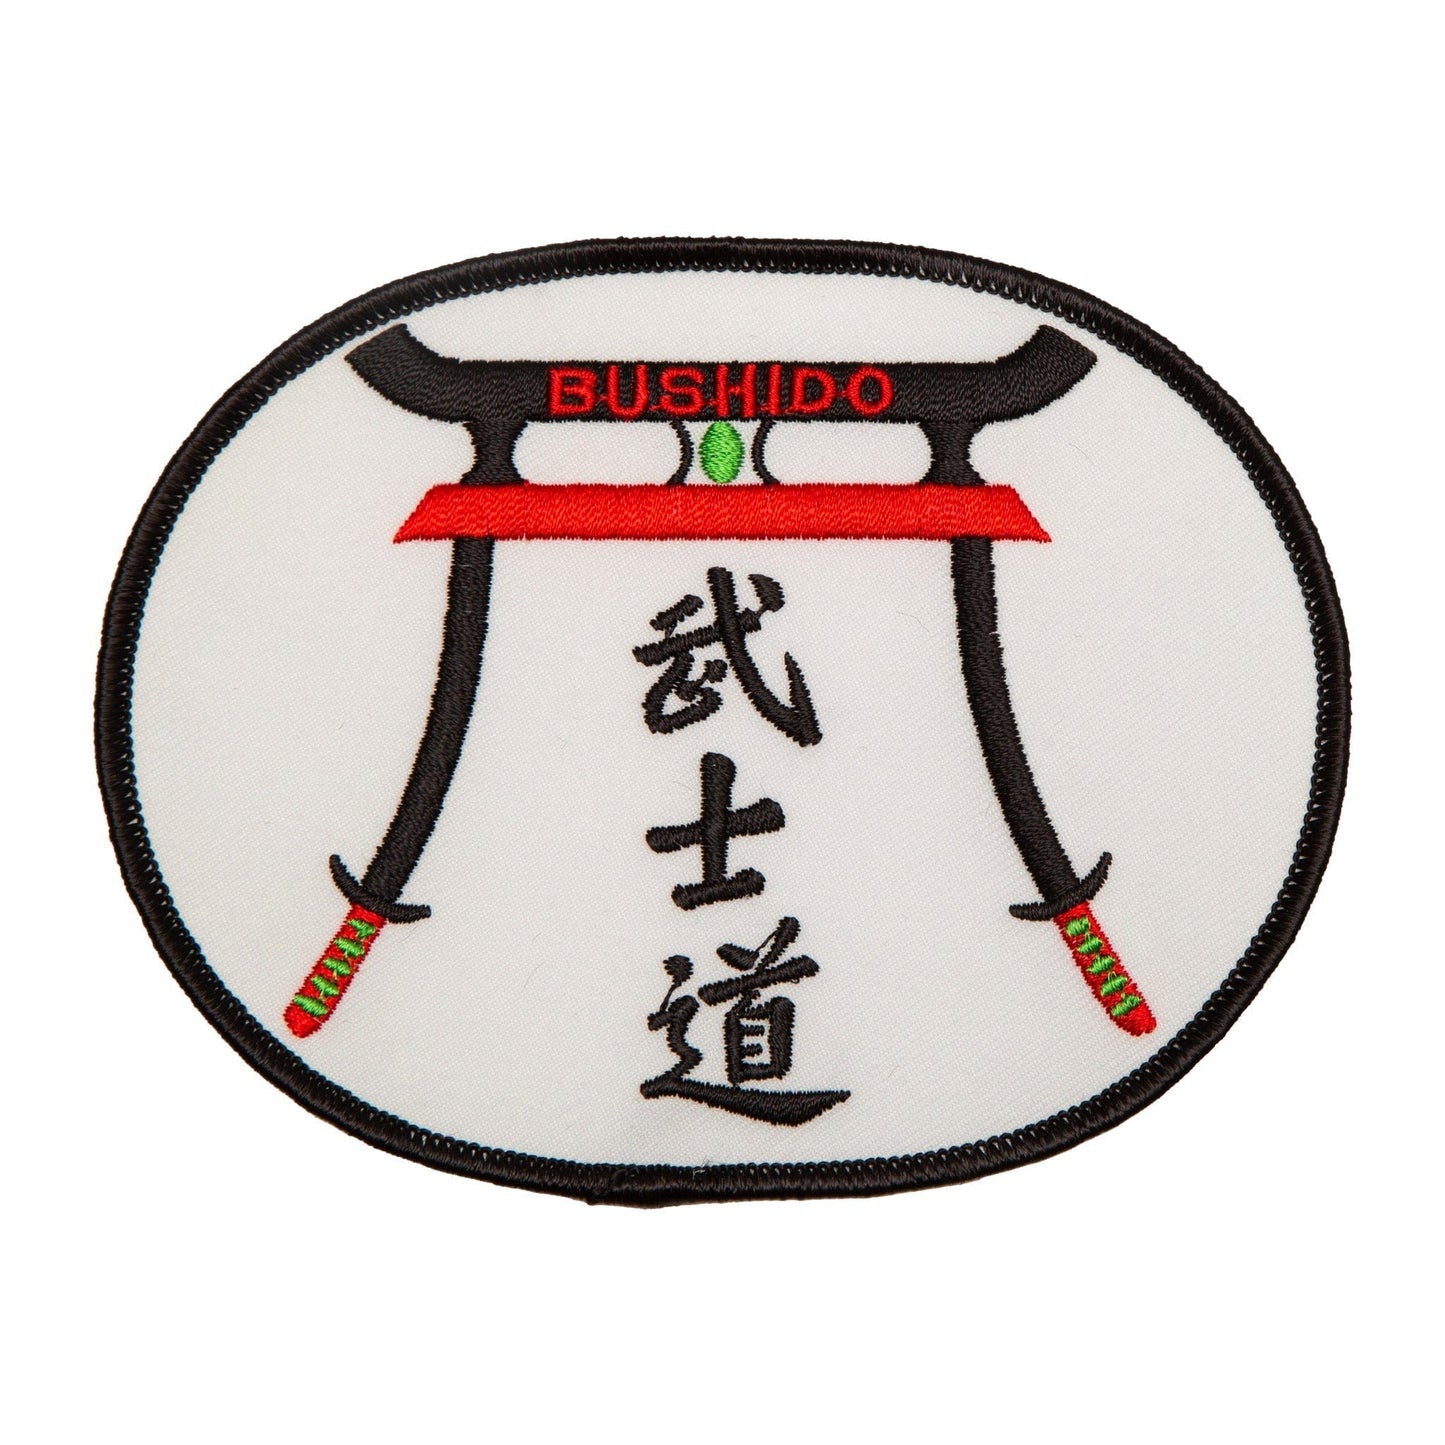 Bushido Patch Martial Arts Uniform Patch